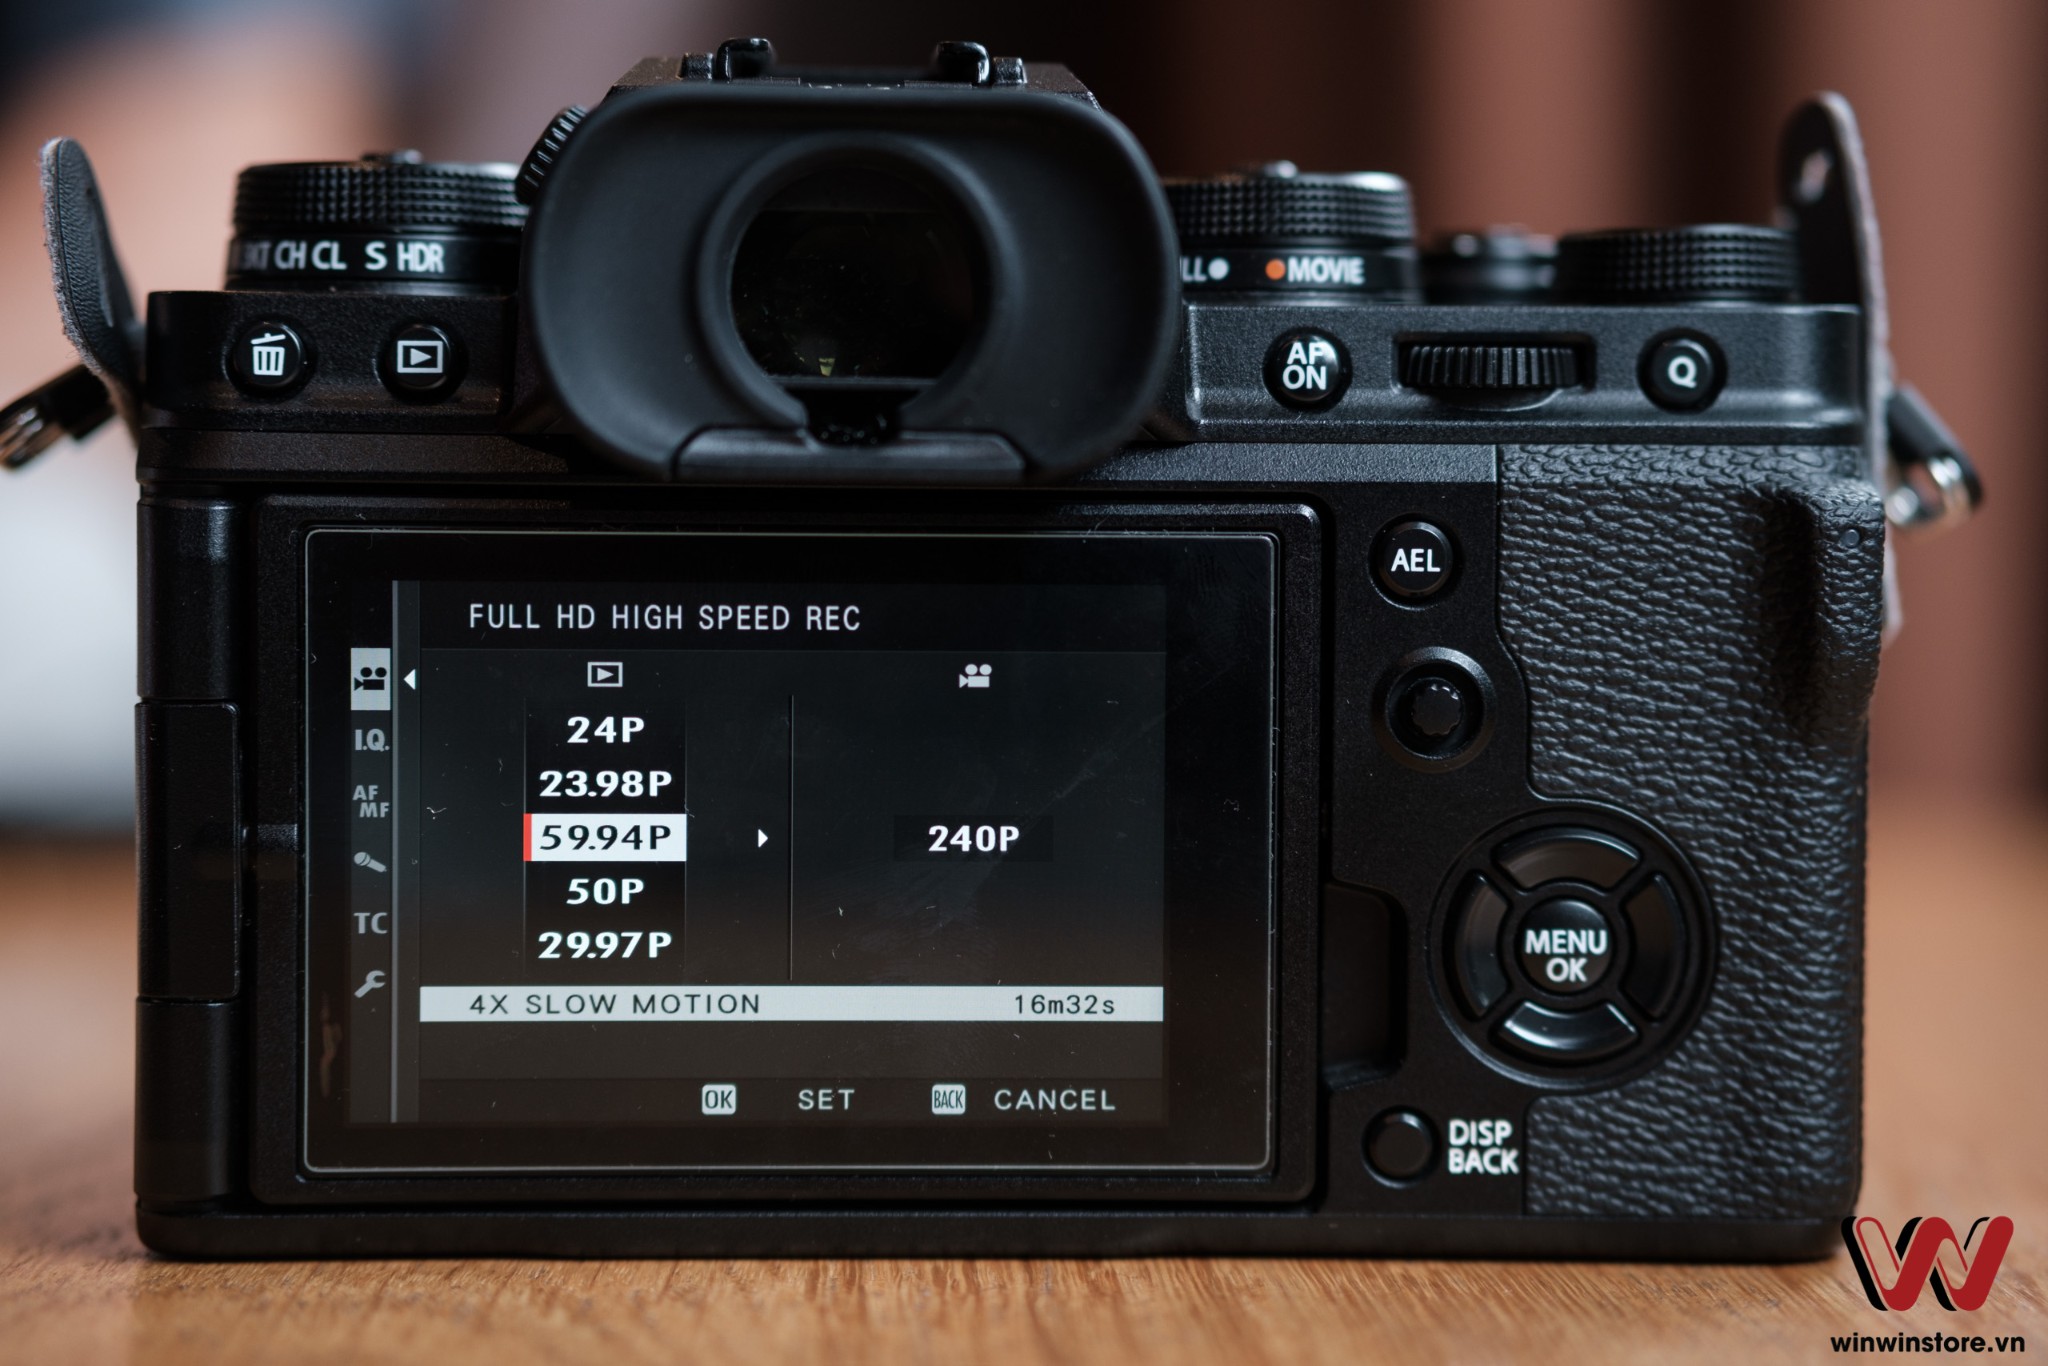 Hướng dẫn bật chế độ quay 240fps trên Fujifilm X-T4